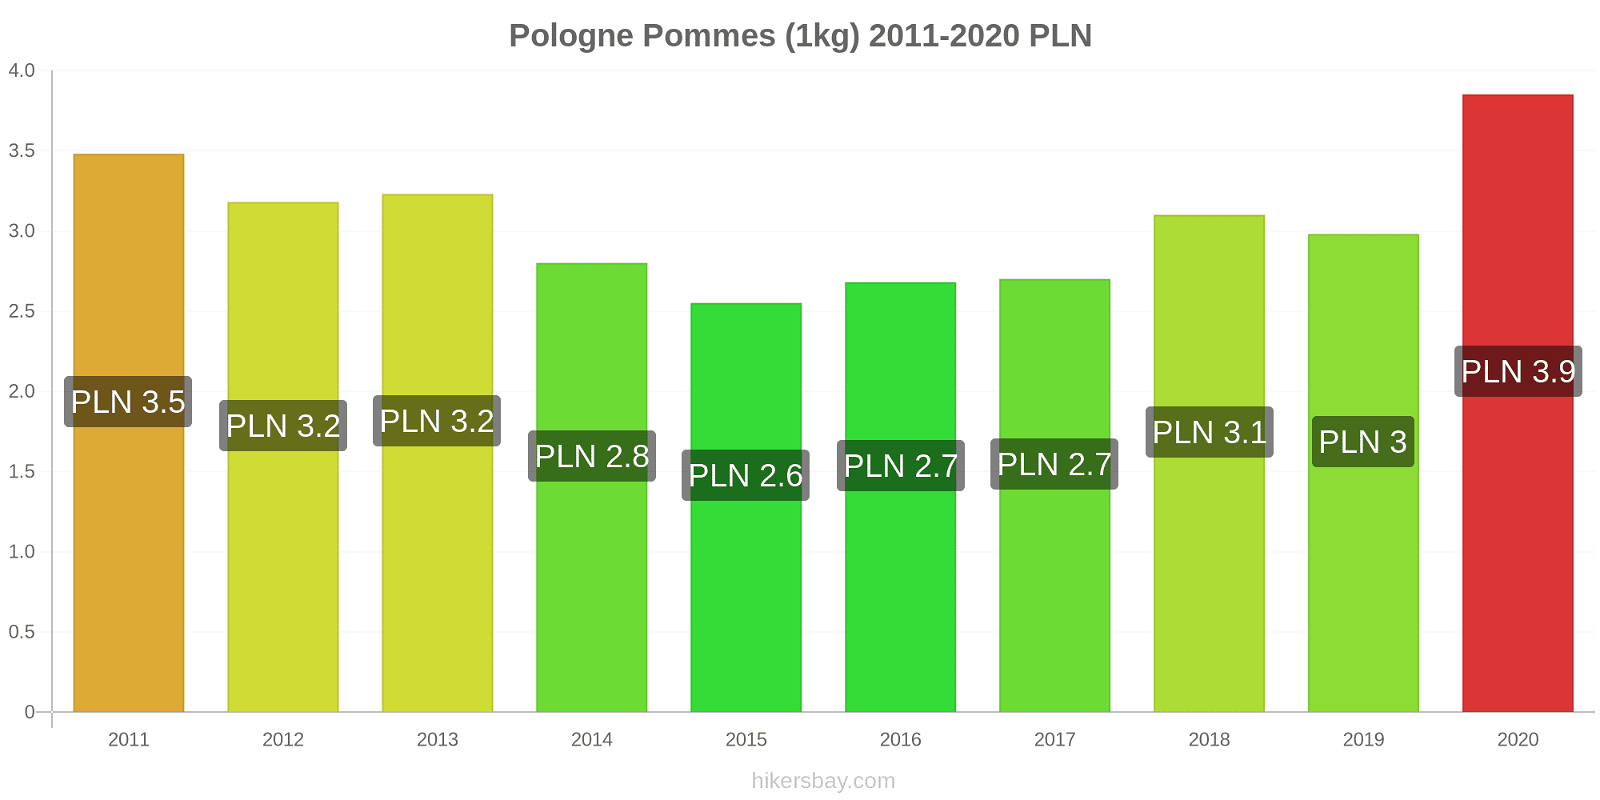 Pologne changements de prix Pommes (1kg) hikersbay.com